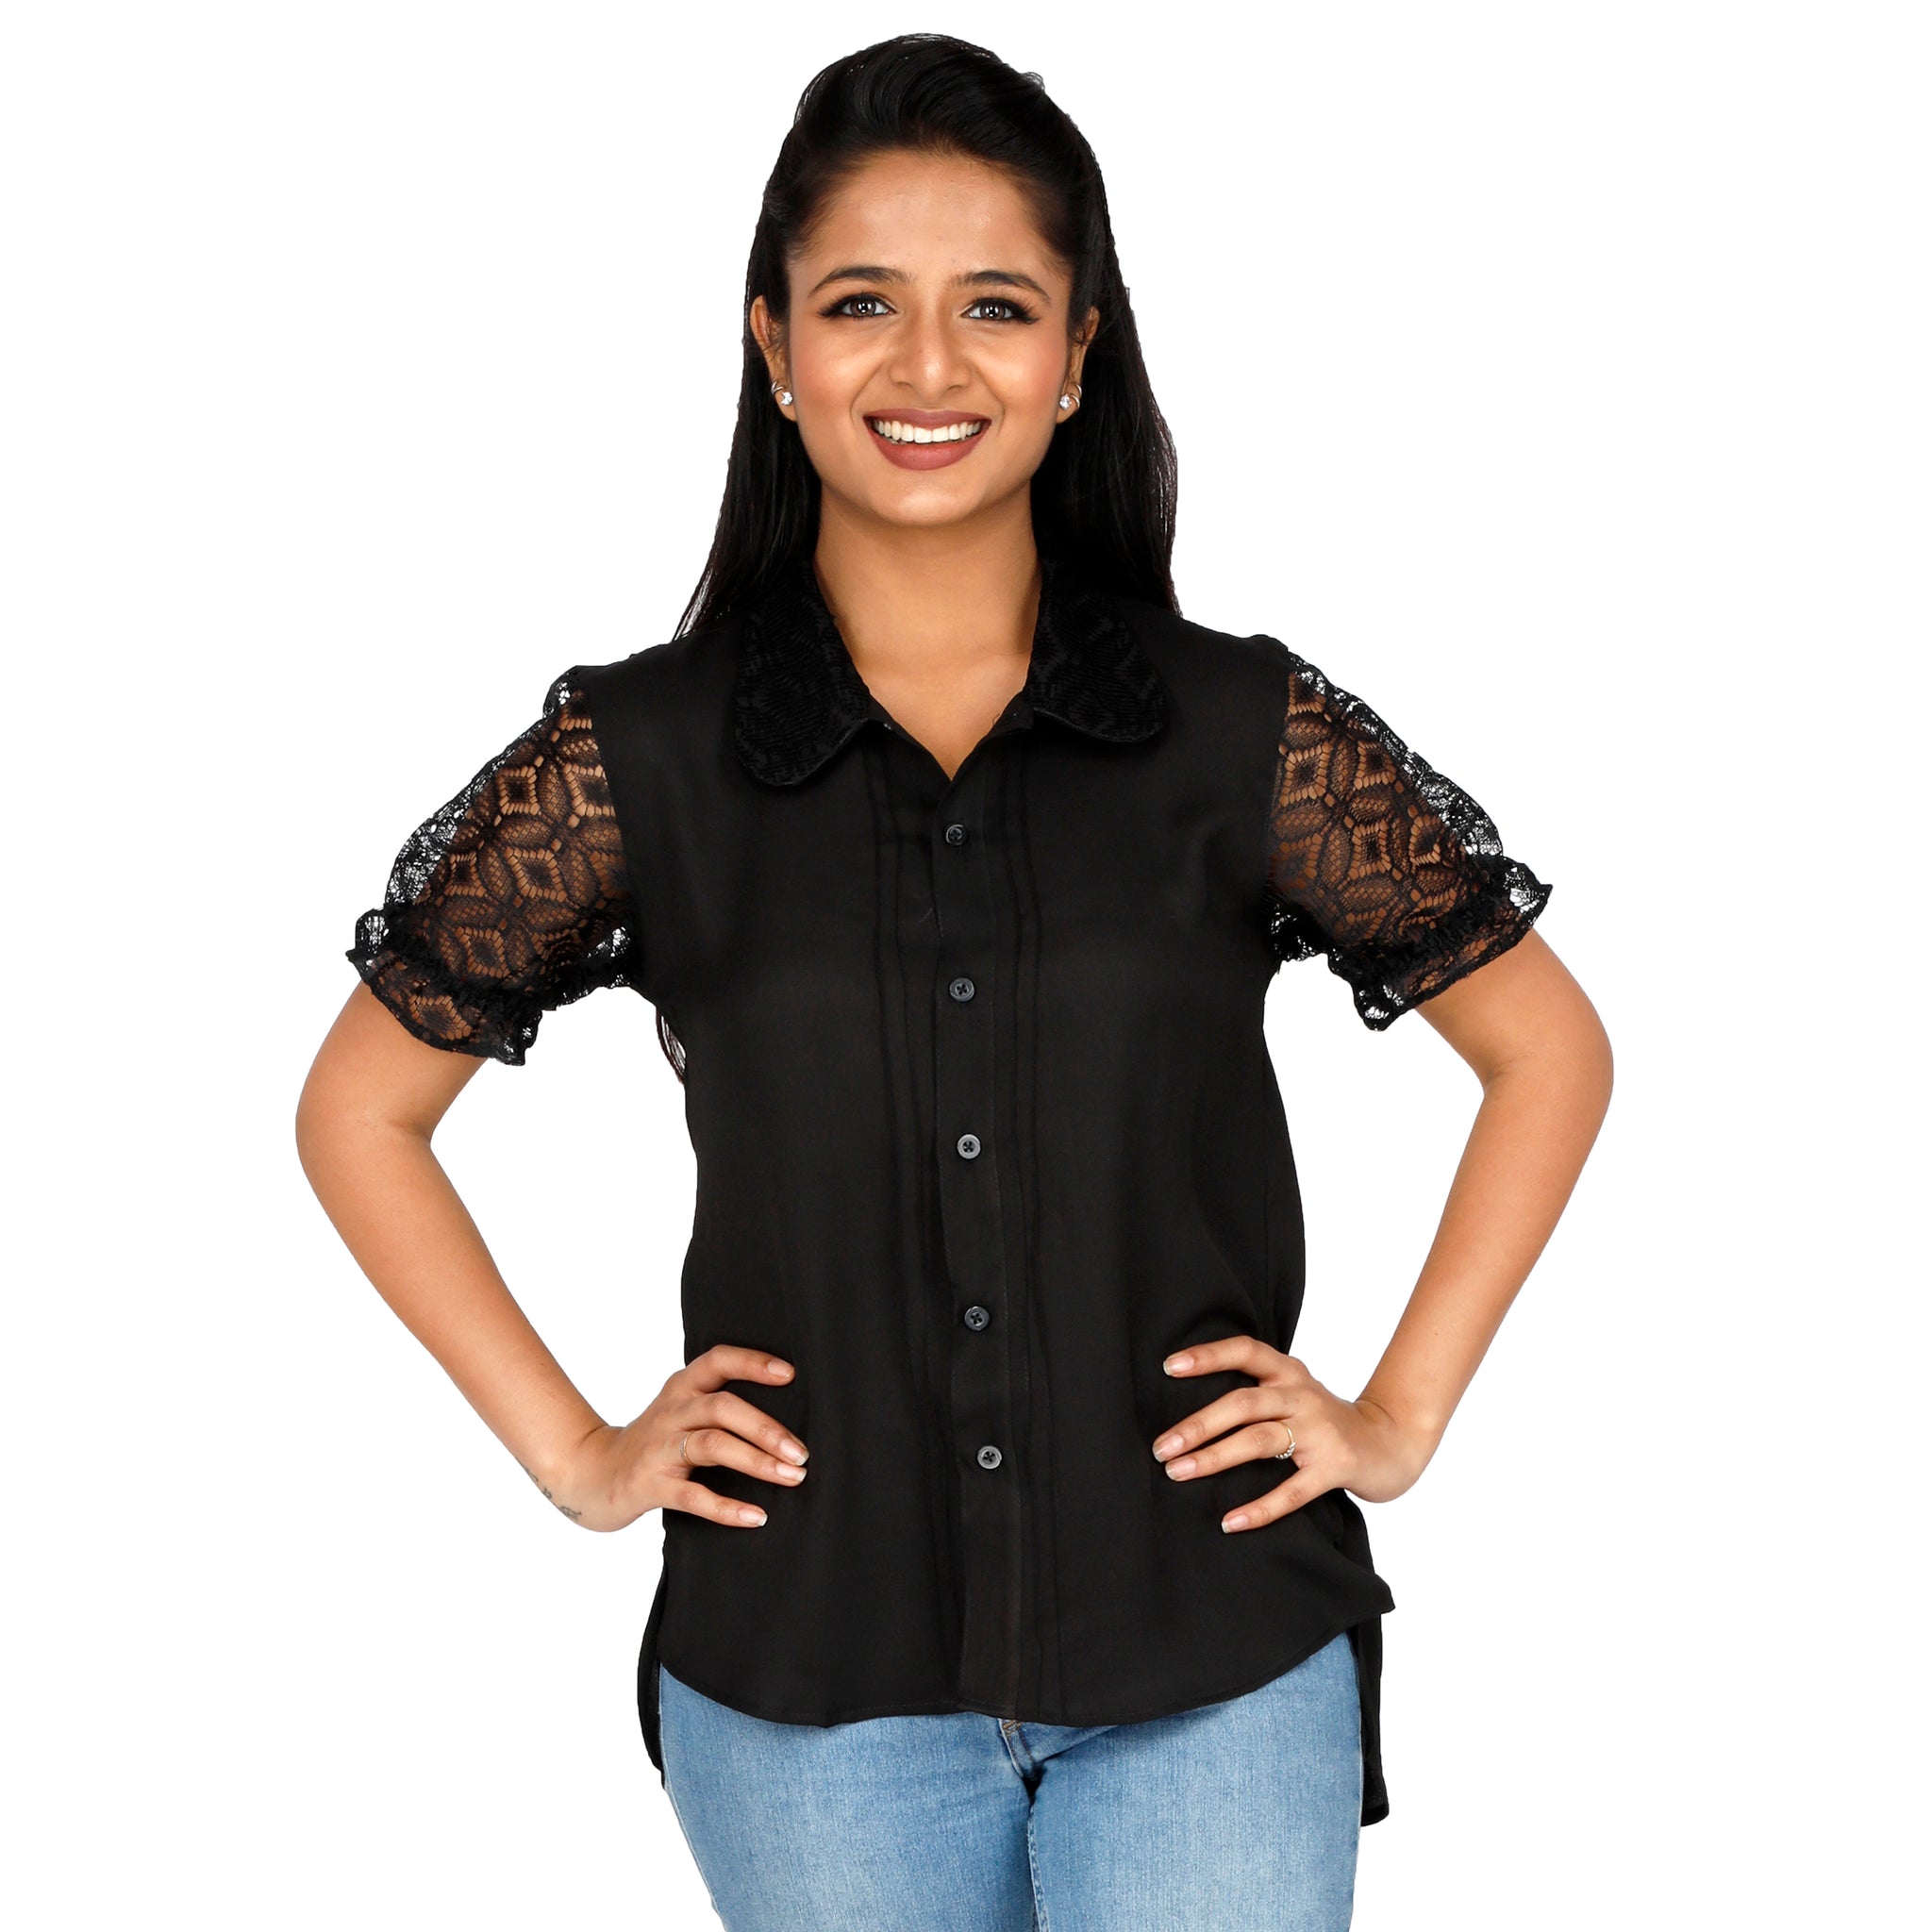 women's-dressy-black-top-with-sheer-sleeves-online